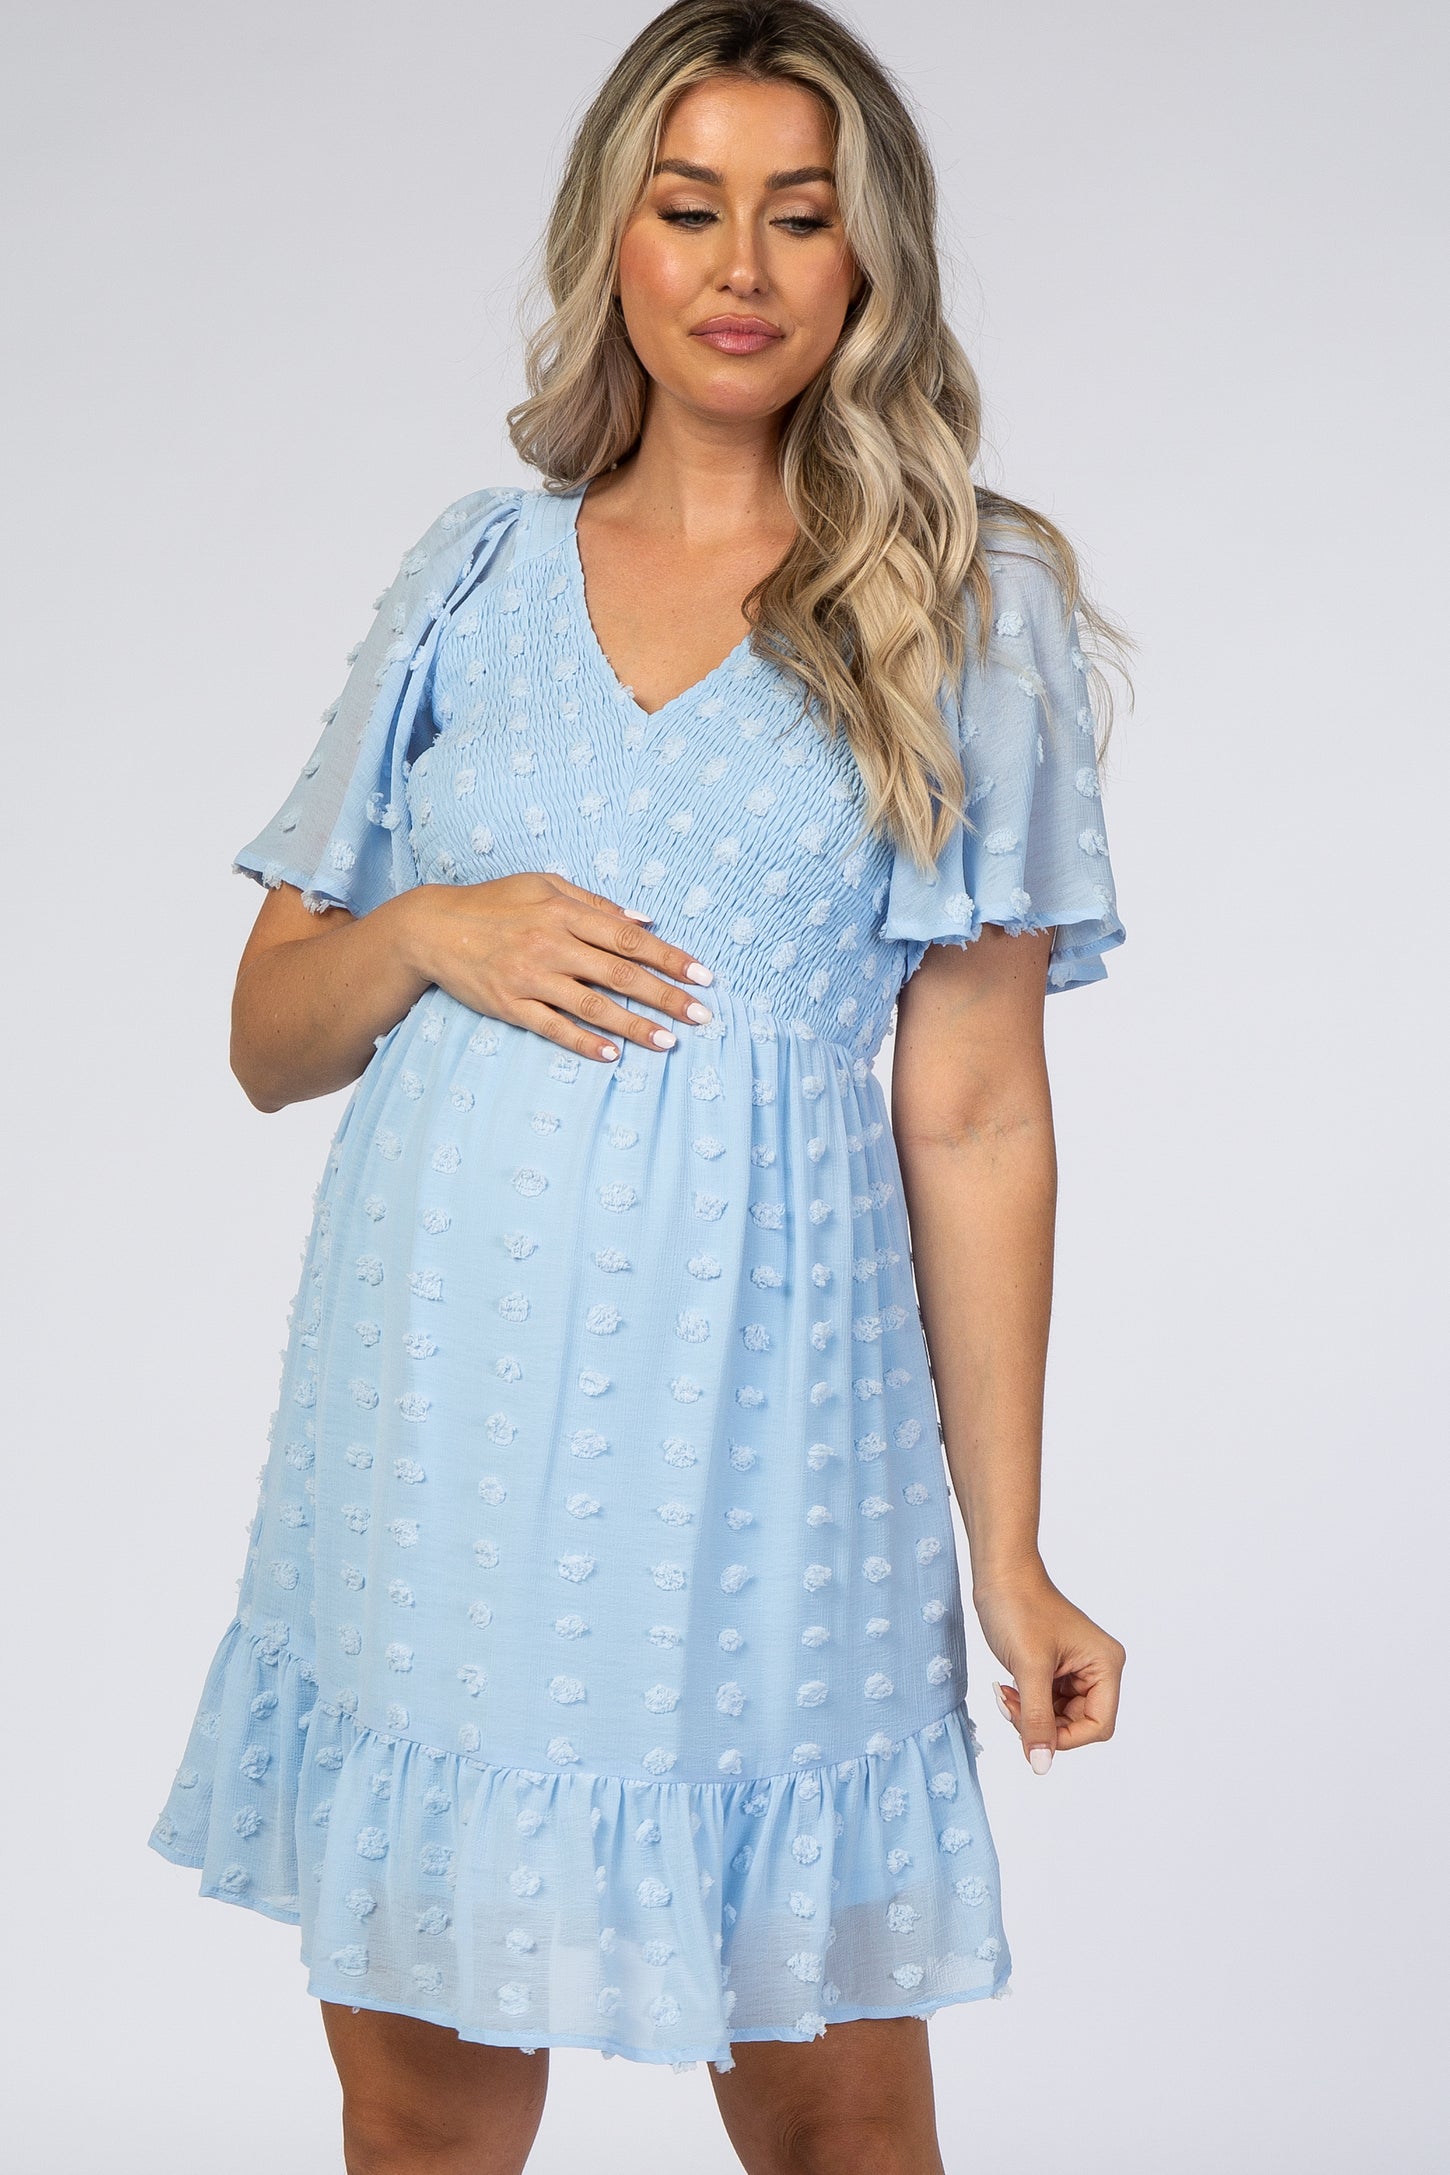 Light Blue Swiss Dot Smocked Maternity Dress– PinkBlush